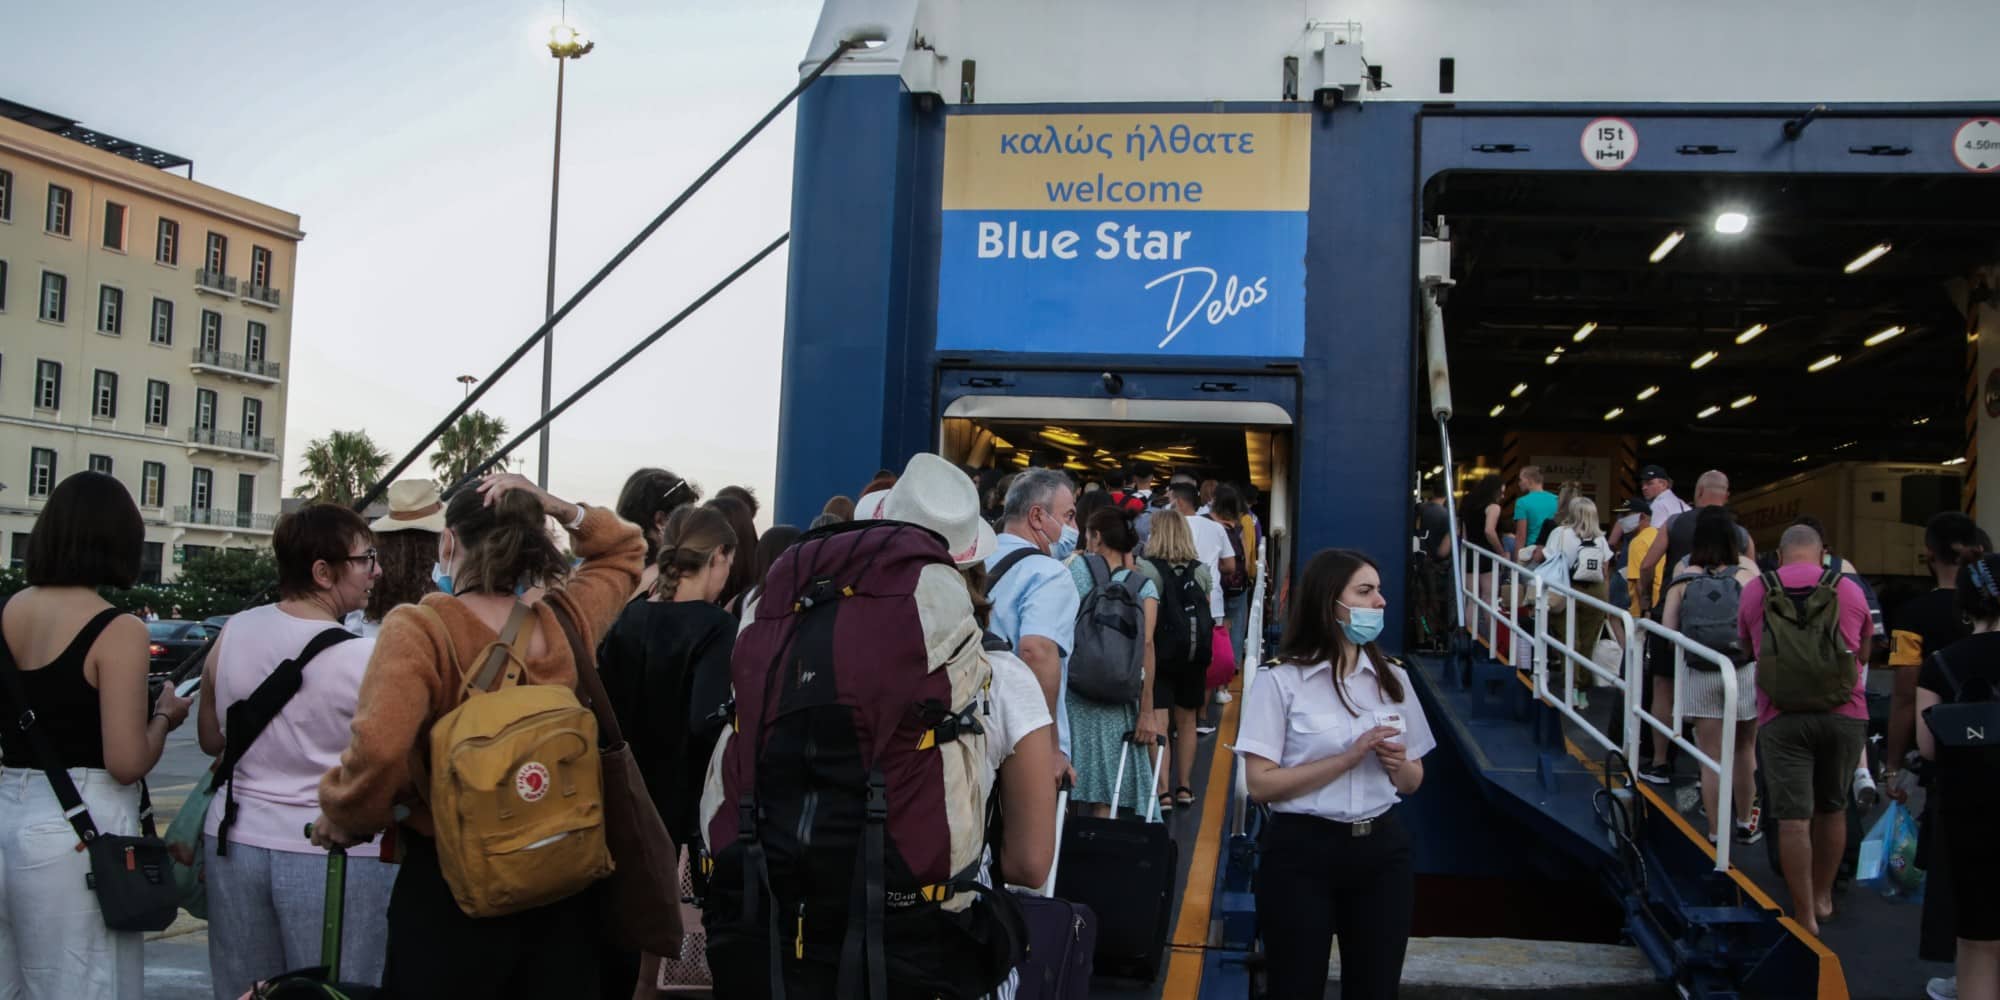 Ταξιδιώτες ετοιμάζονται να επιβιβαστούν σε πλοία στο λιμάνι του Πειραιά για τις καλοκαιρινές διακοπές